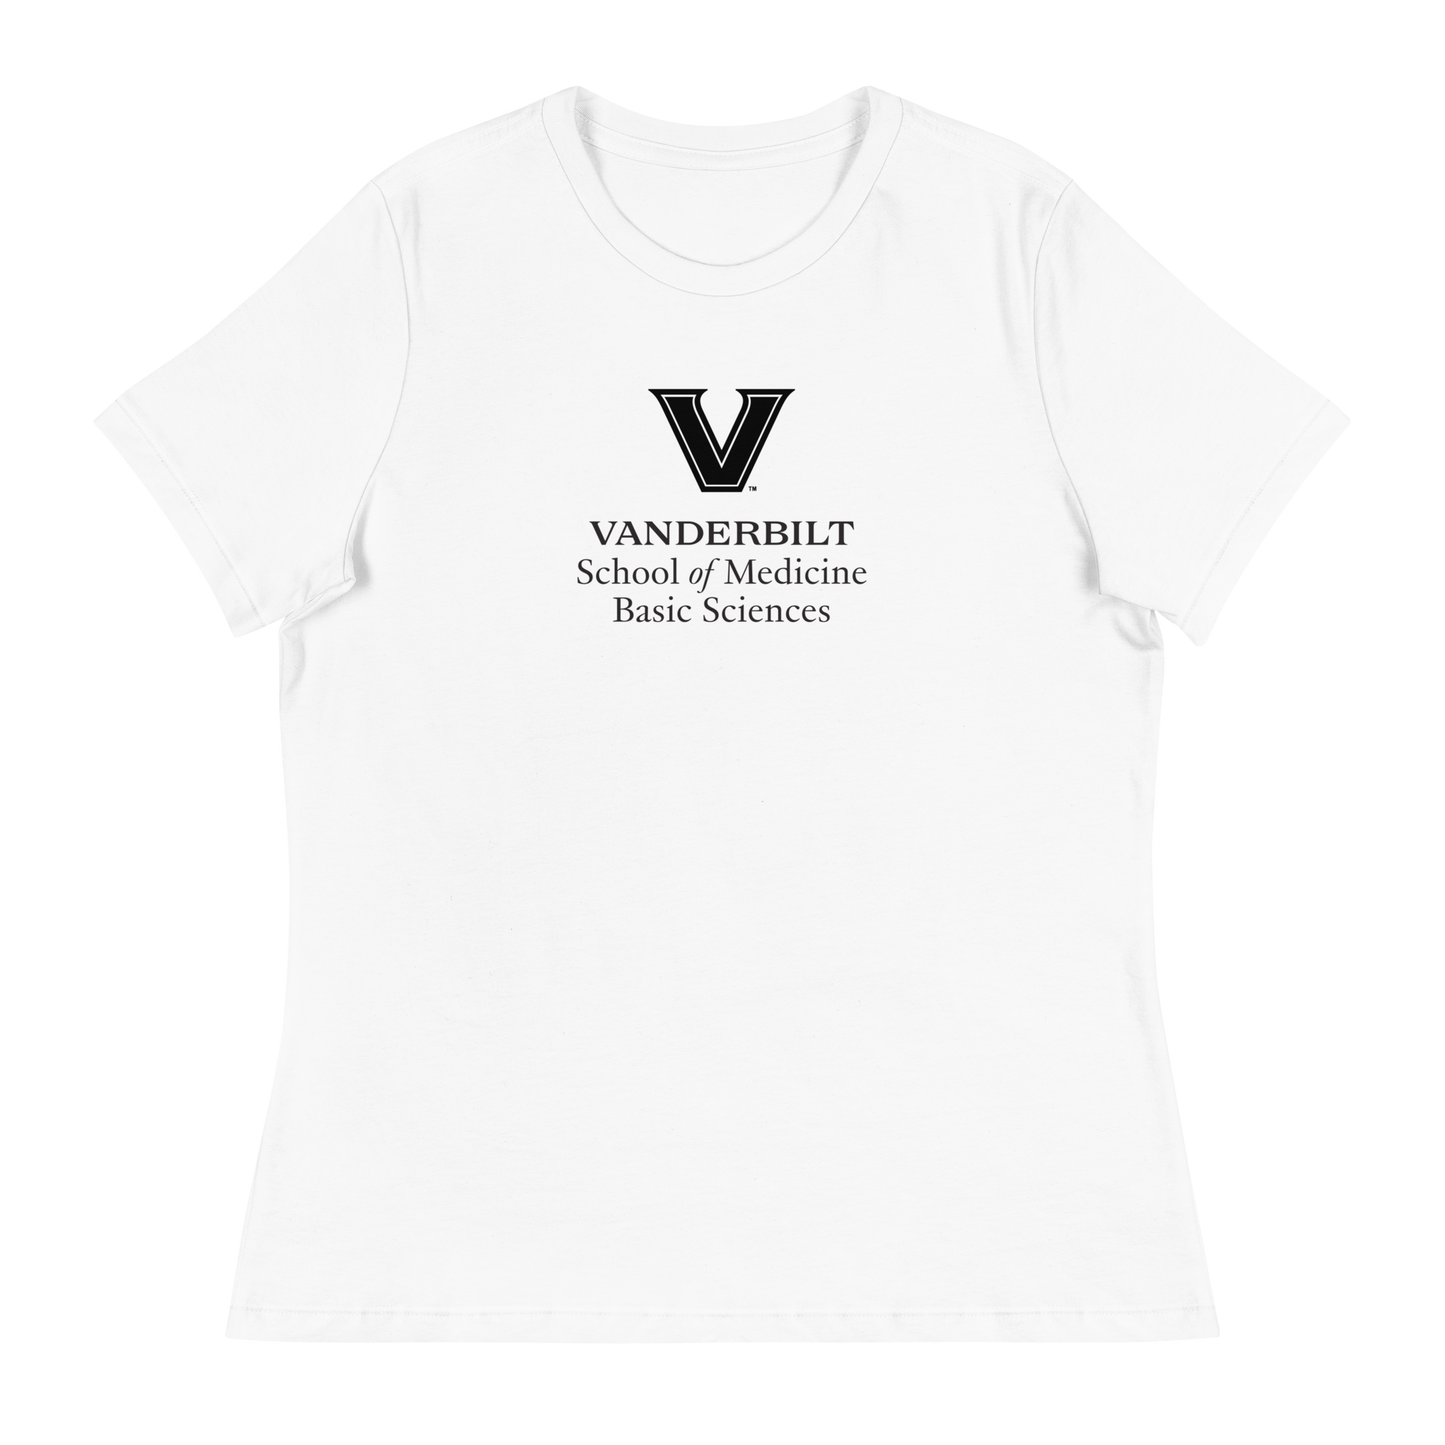 VU Basic Sciences Women's Relaxed T-Shirt